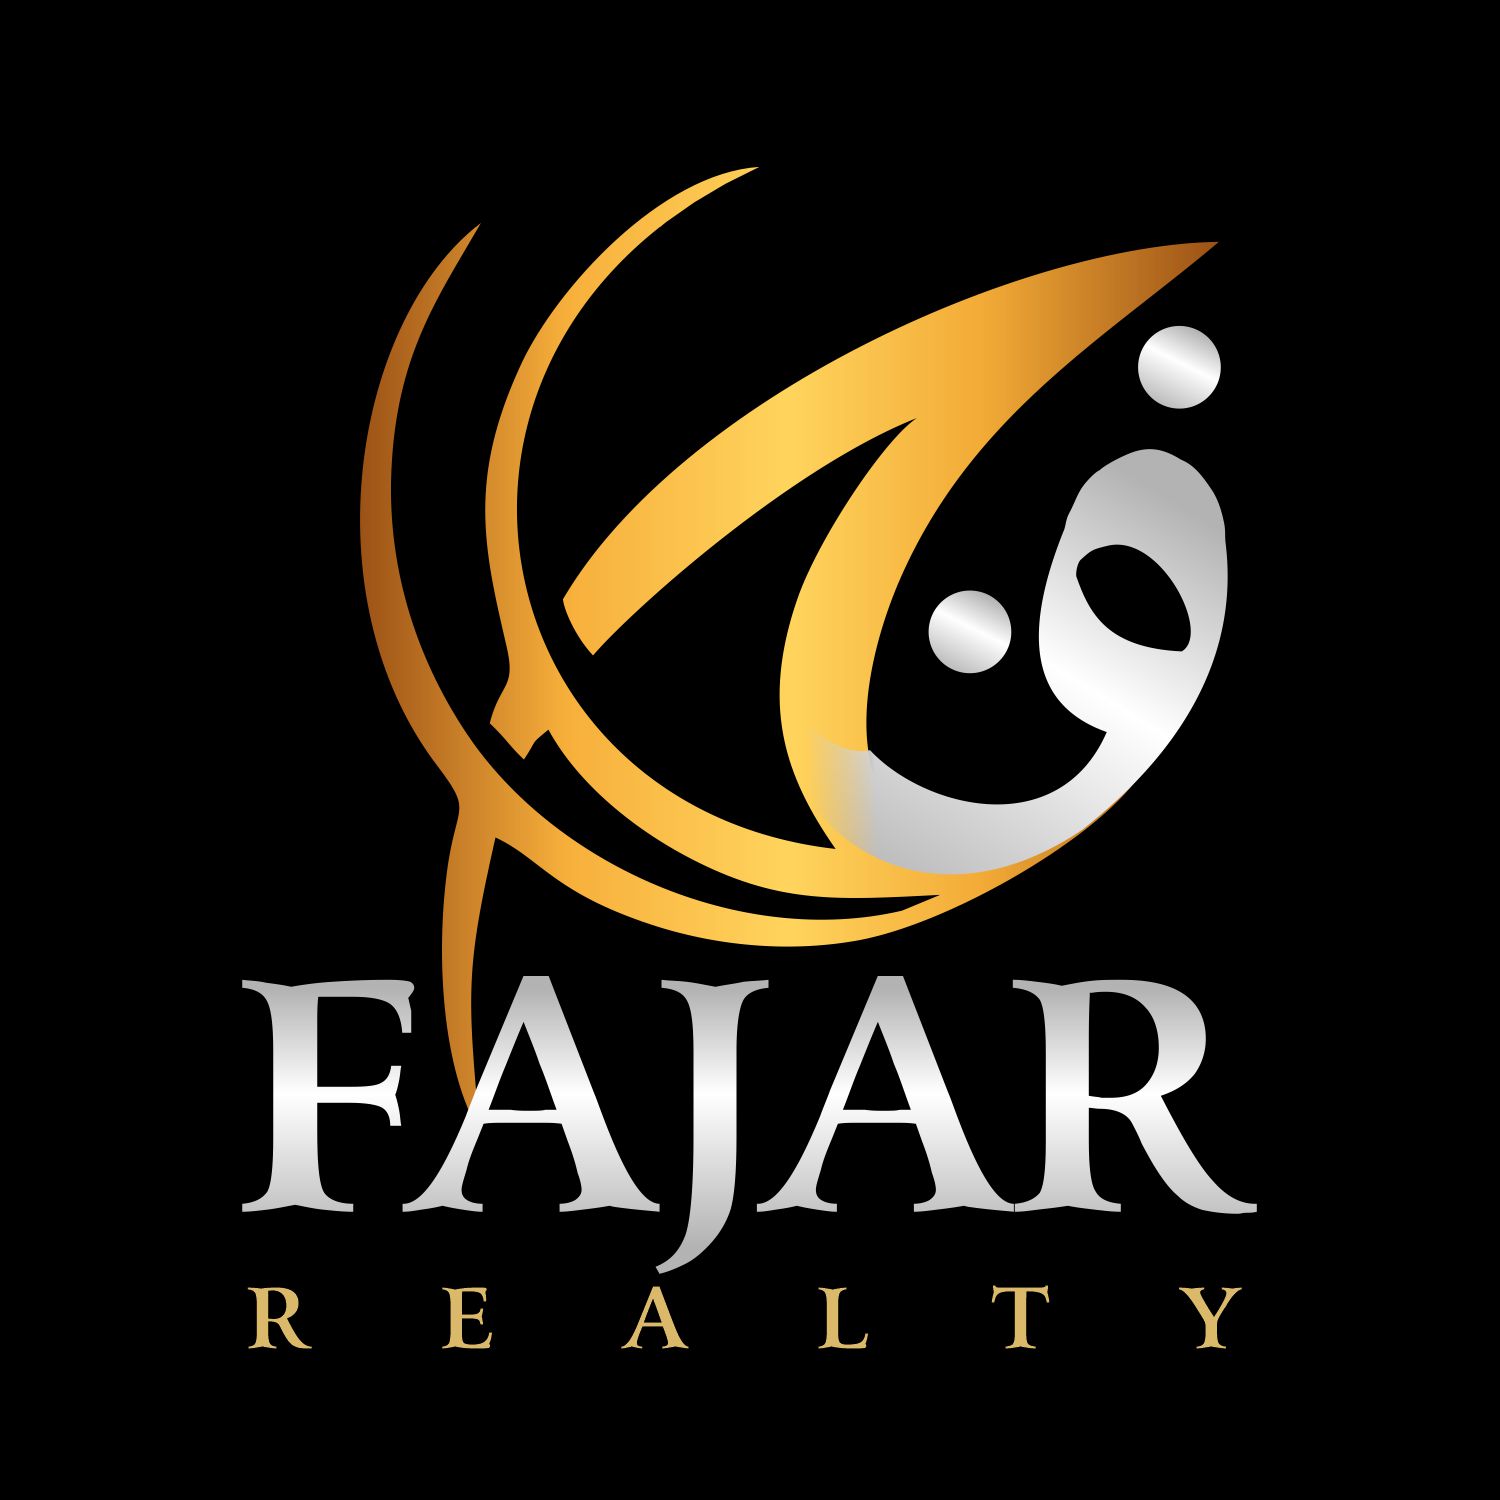 Fajar Realty Real Estate